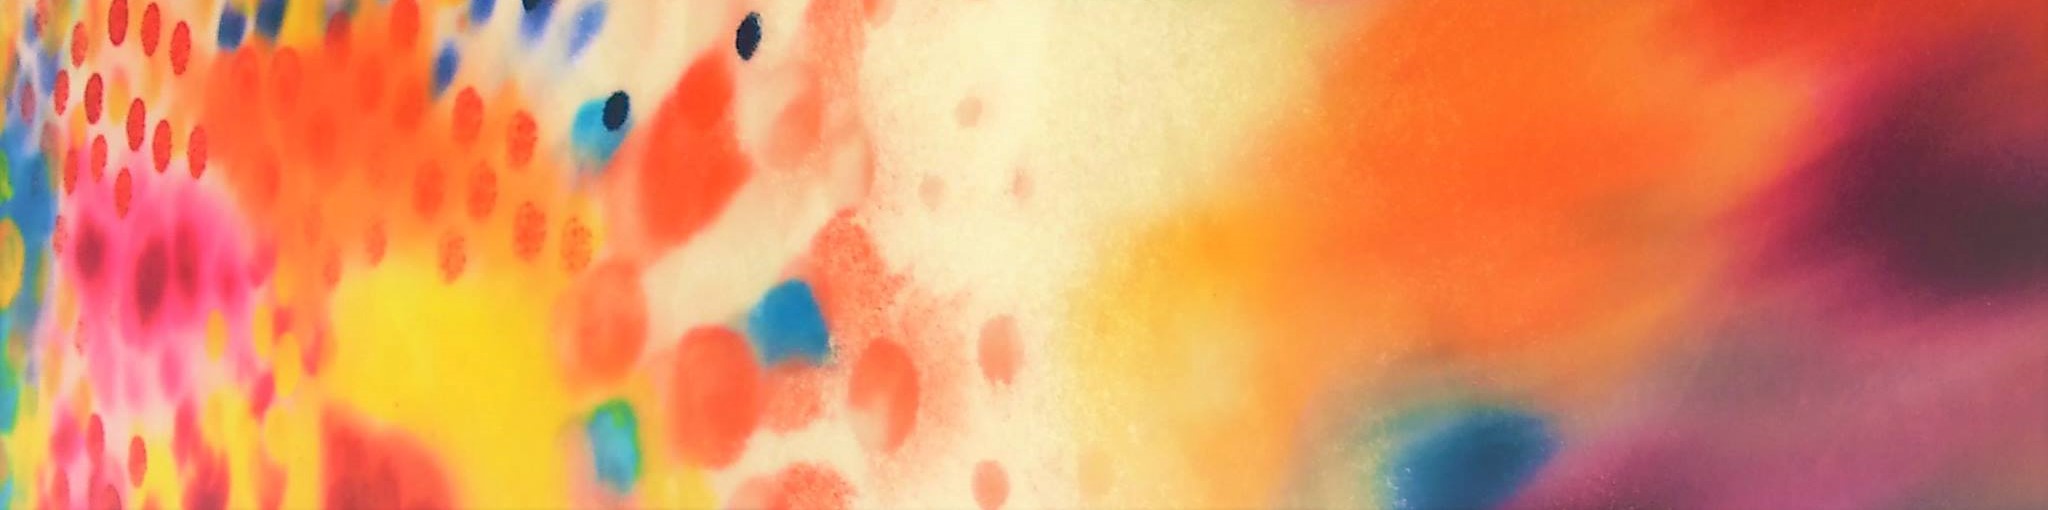 Taidematka taidekeskus Salmelaan Kuvassa värikäs tunnelmaa taidematkalla kuvastava abstrakti maalaus